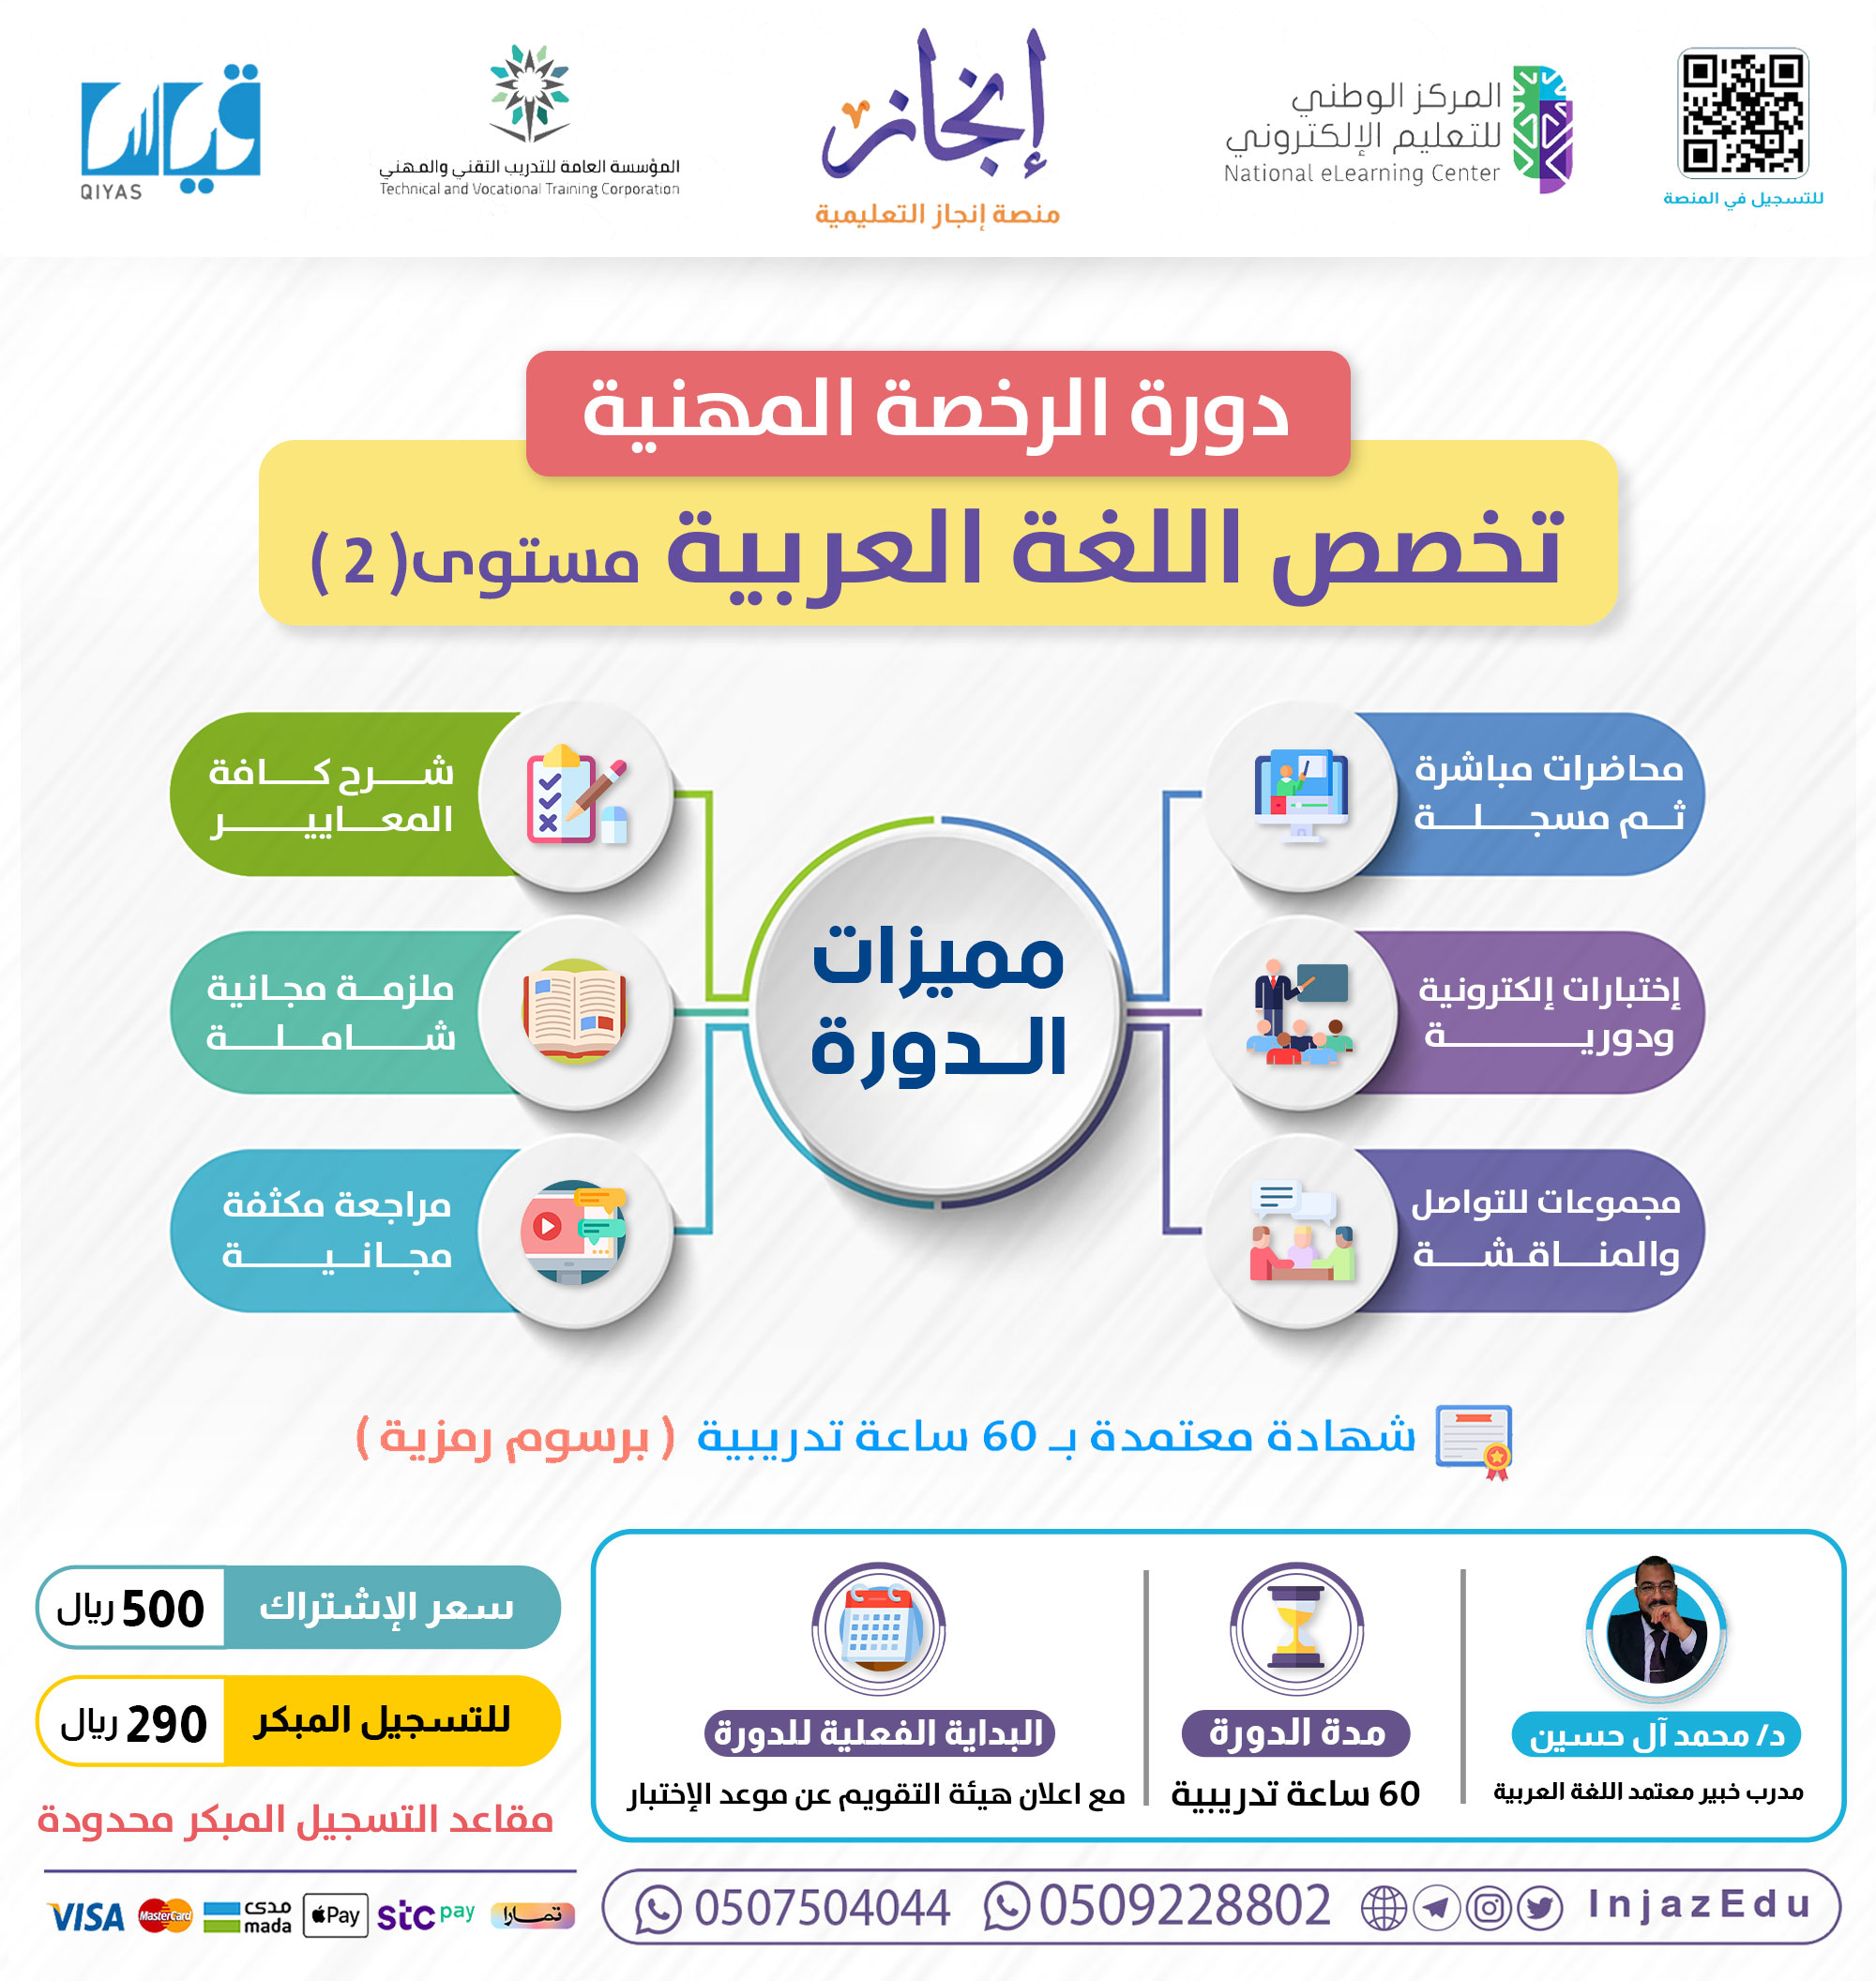 دورة الرخصة المهنية اللغة العربية (2)